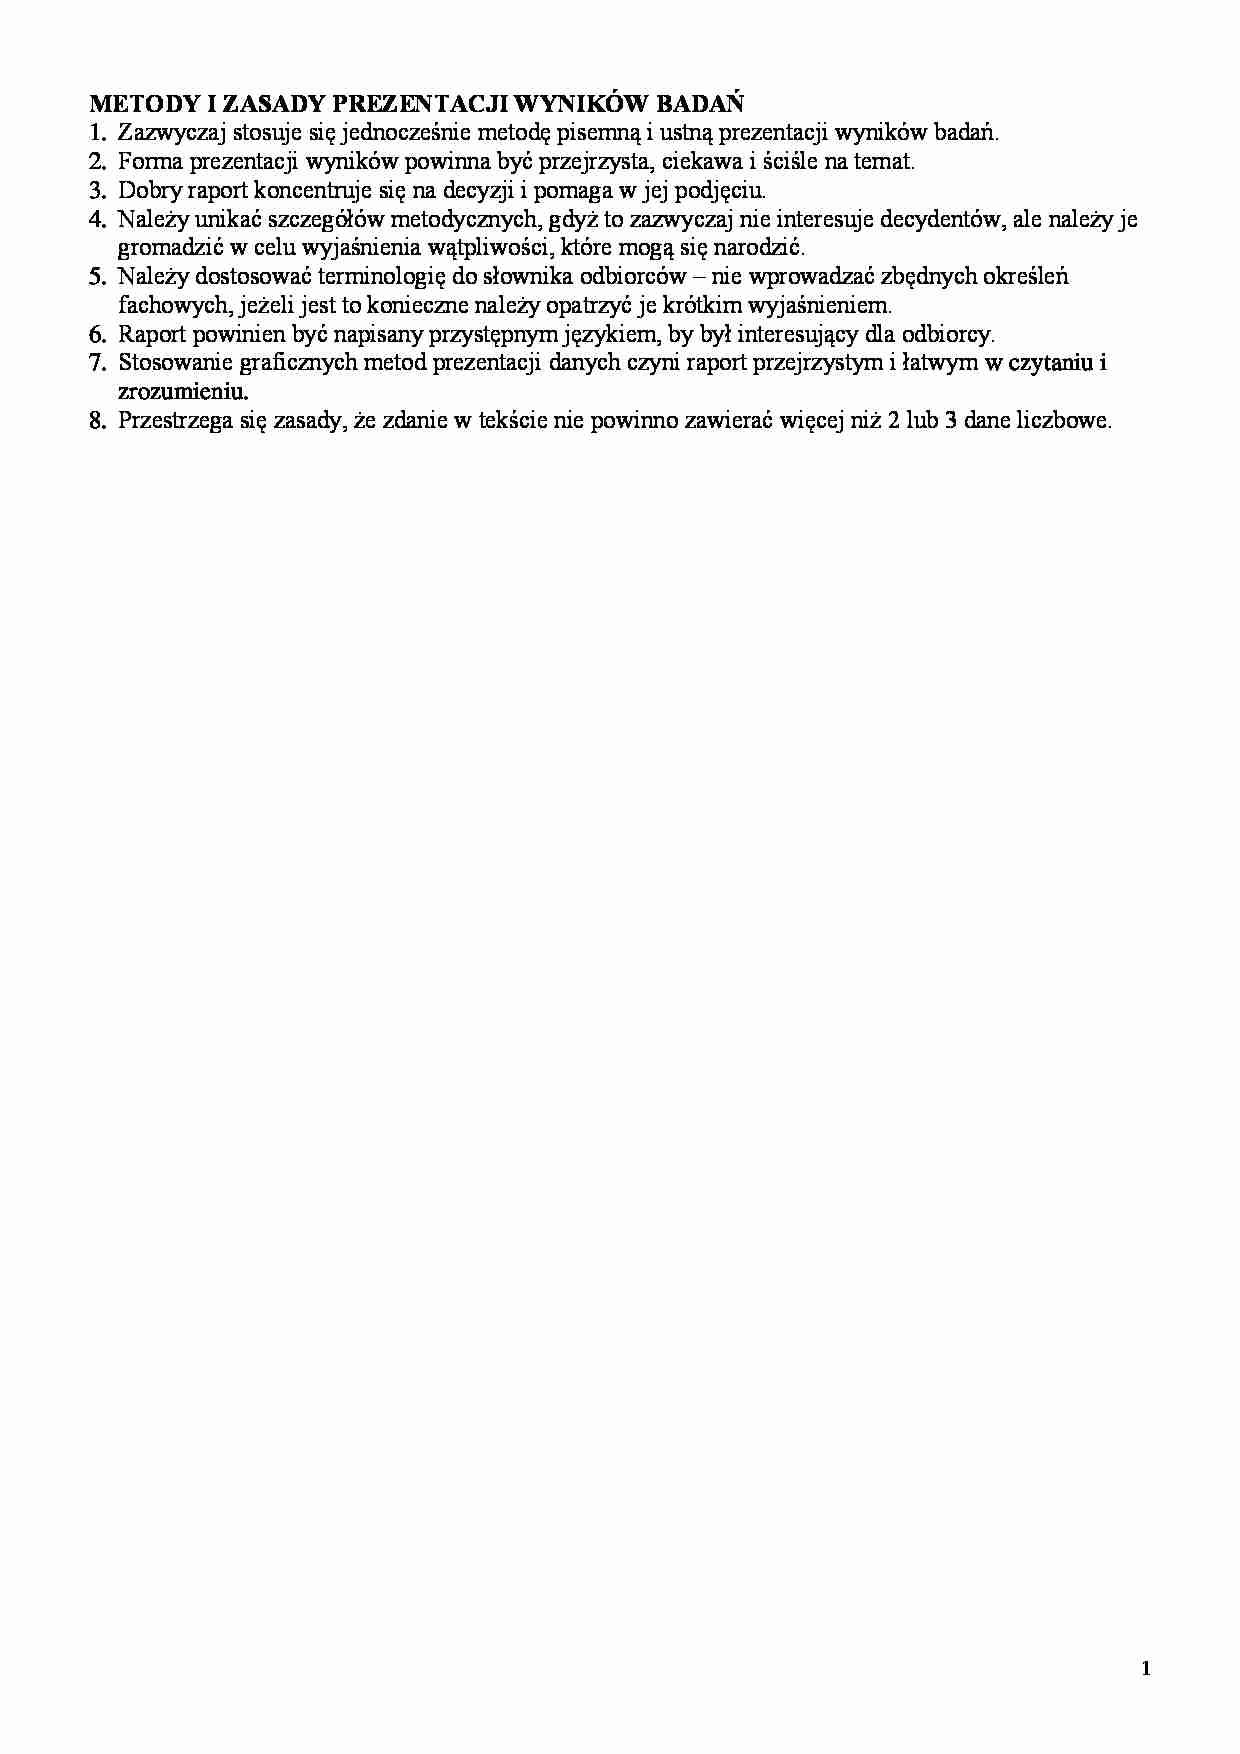 Metody i zasady prezentacji wyników badań marektingowych - strona 1